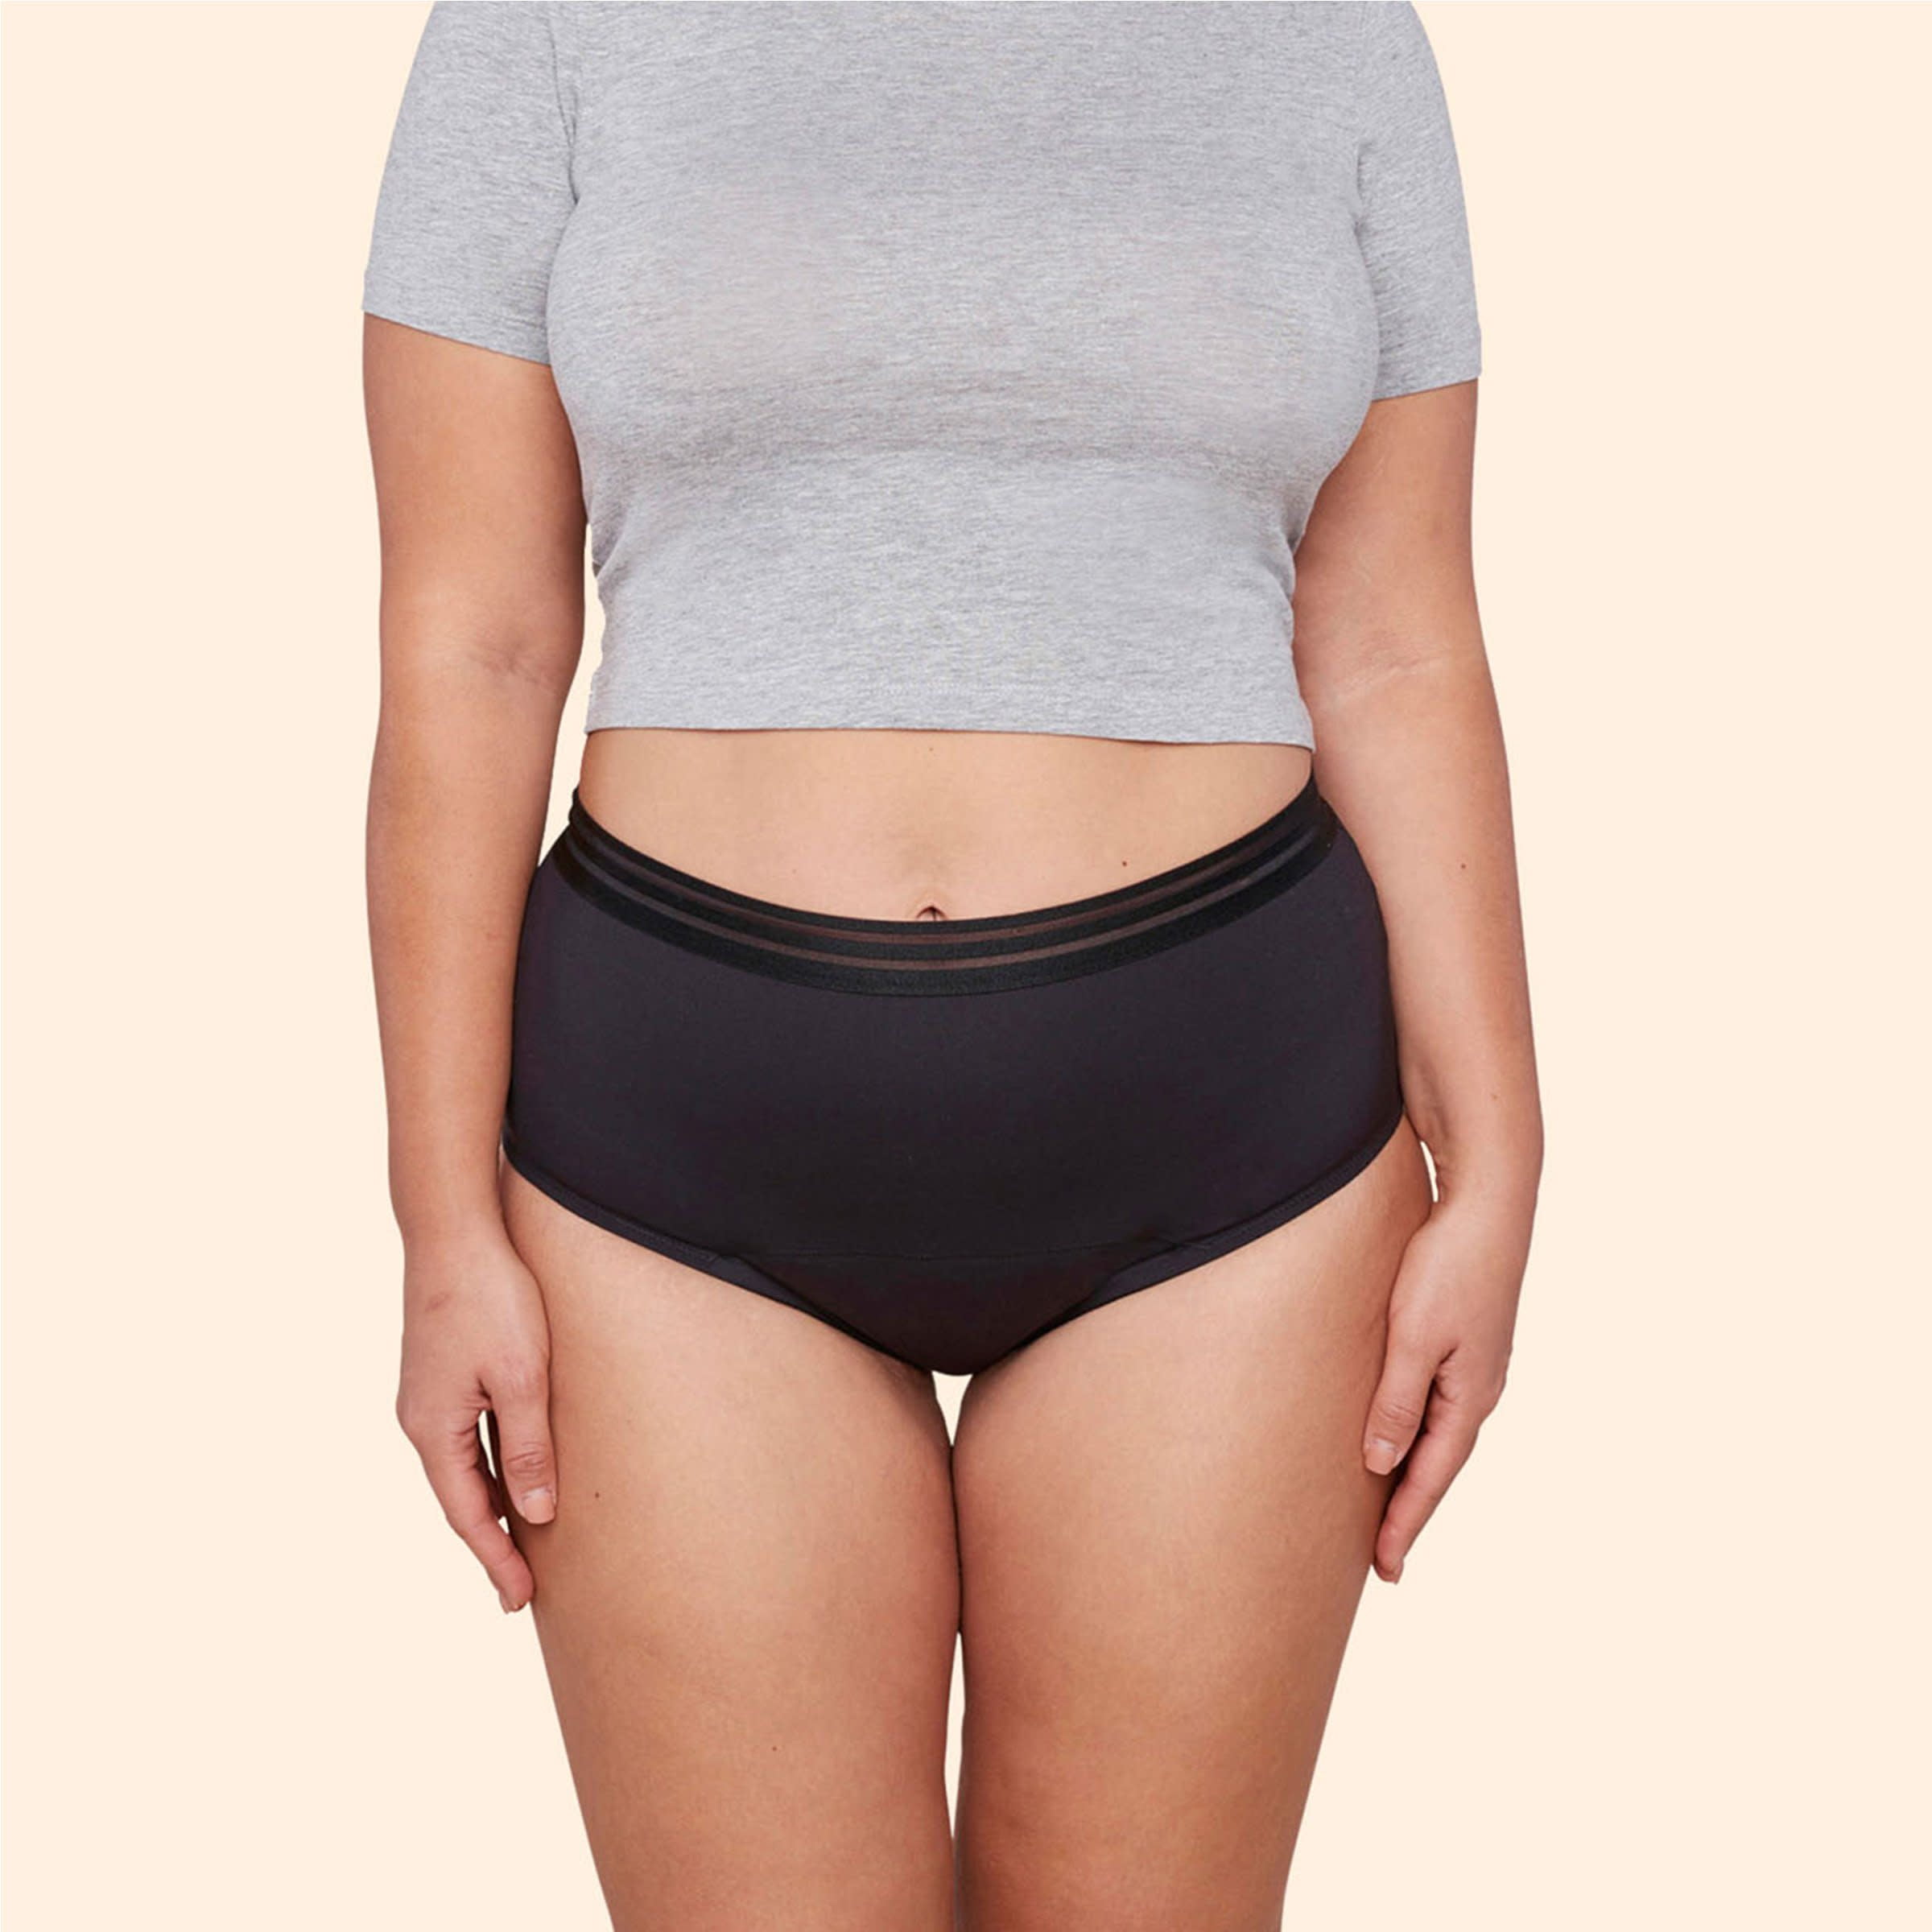 Women's leak-proof panties short tighten urine absorption Grey